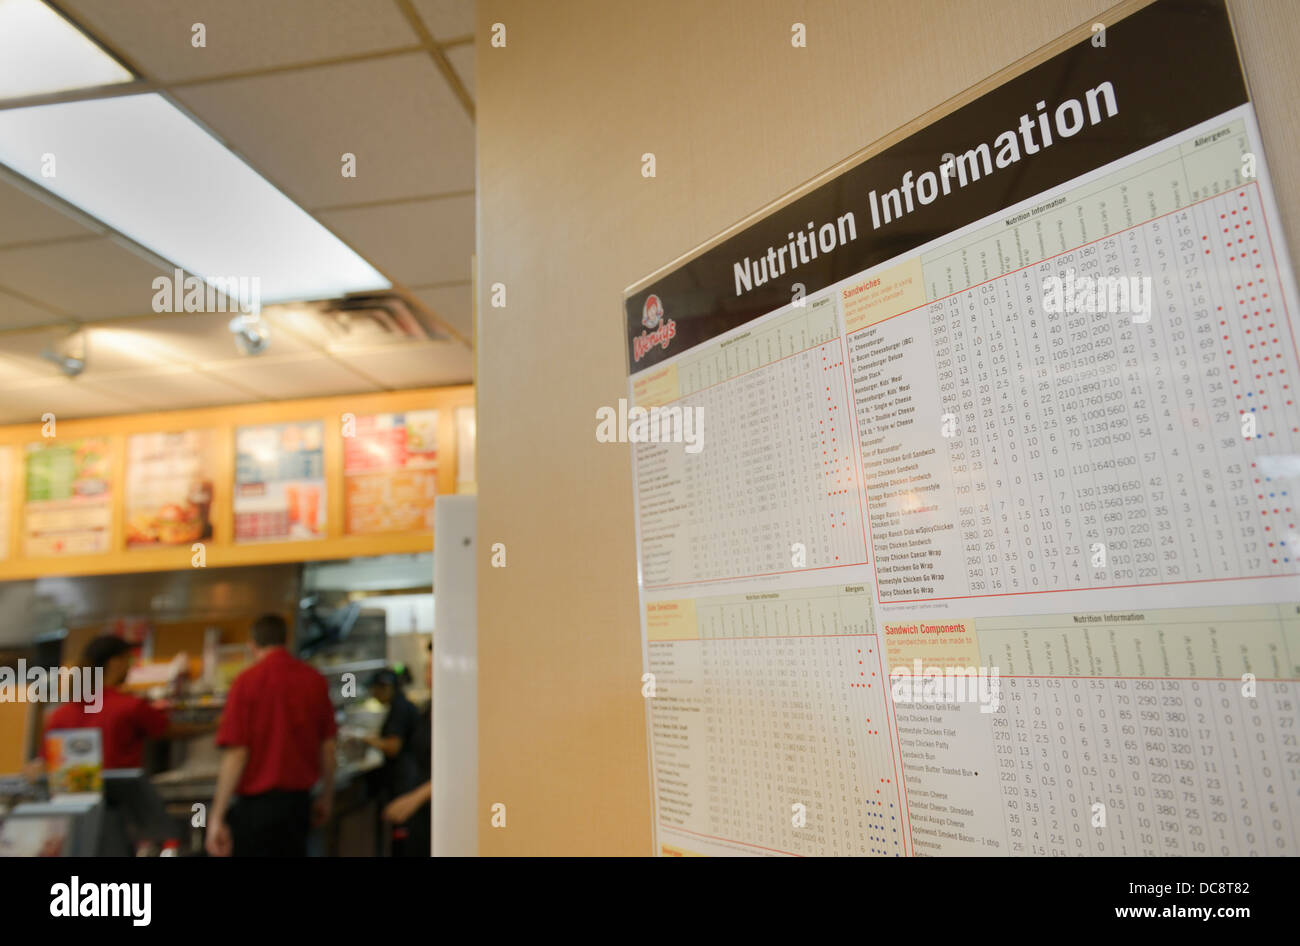 Publicar información sobre la nutrición en un restaurante de comida rápida, NJ, EE.UU. Foto de stock